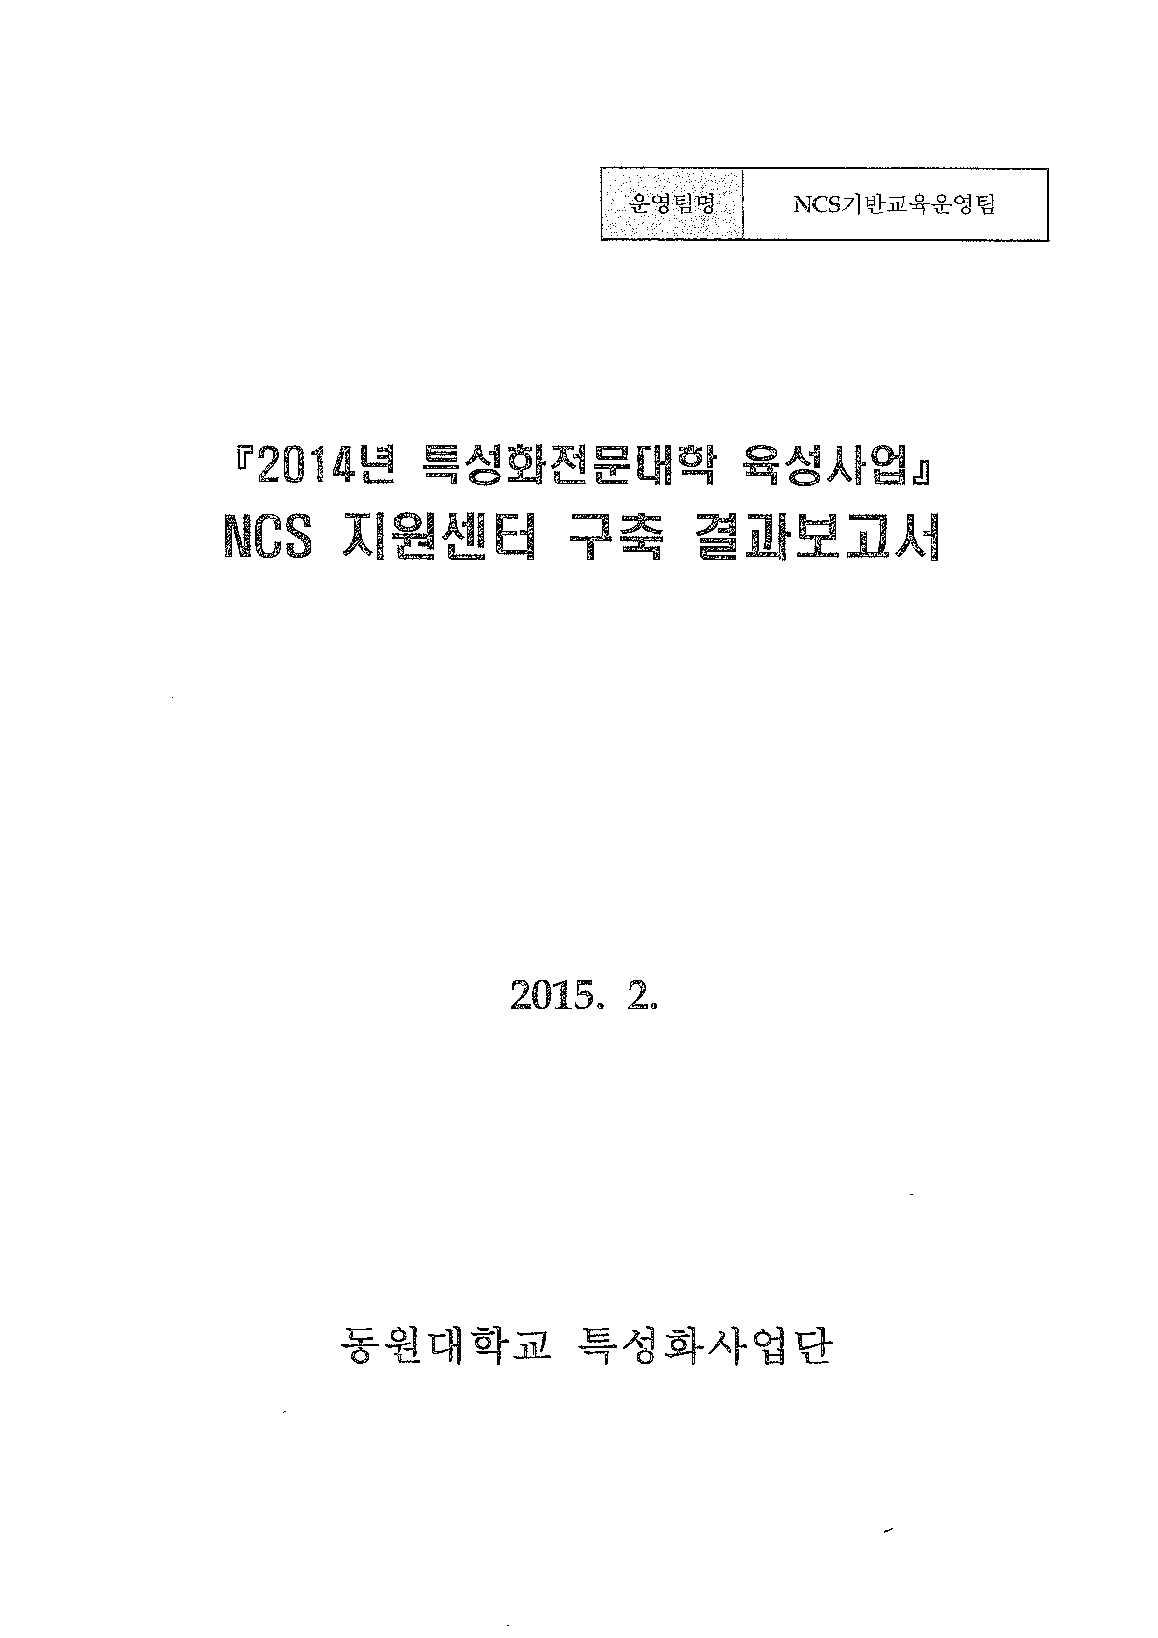 2014년 특성화전문대학육성사업 NCS 지원센터 구축 결과보고서